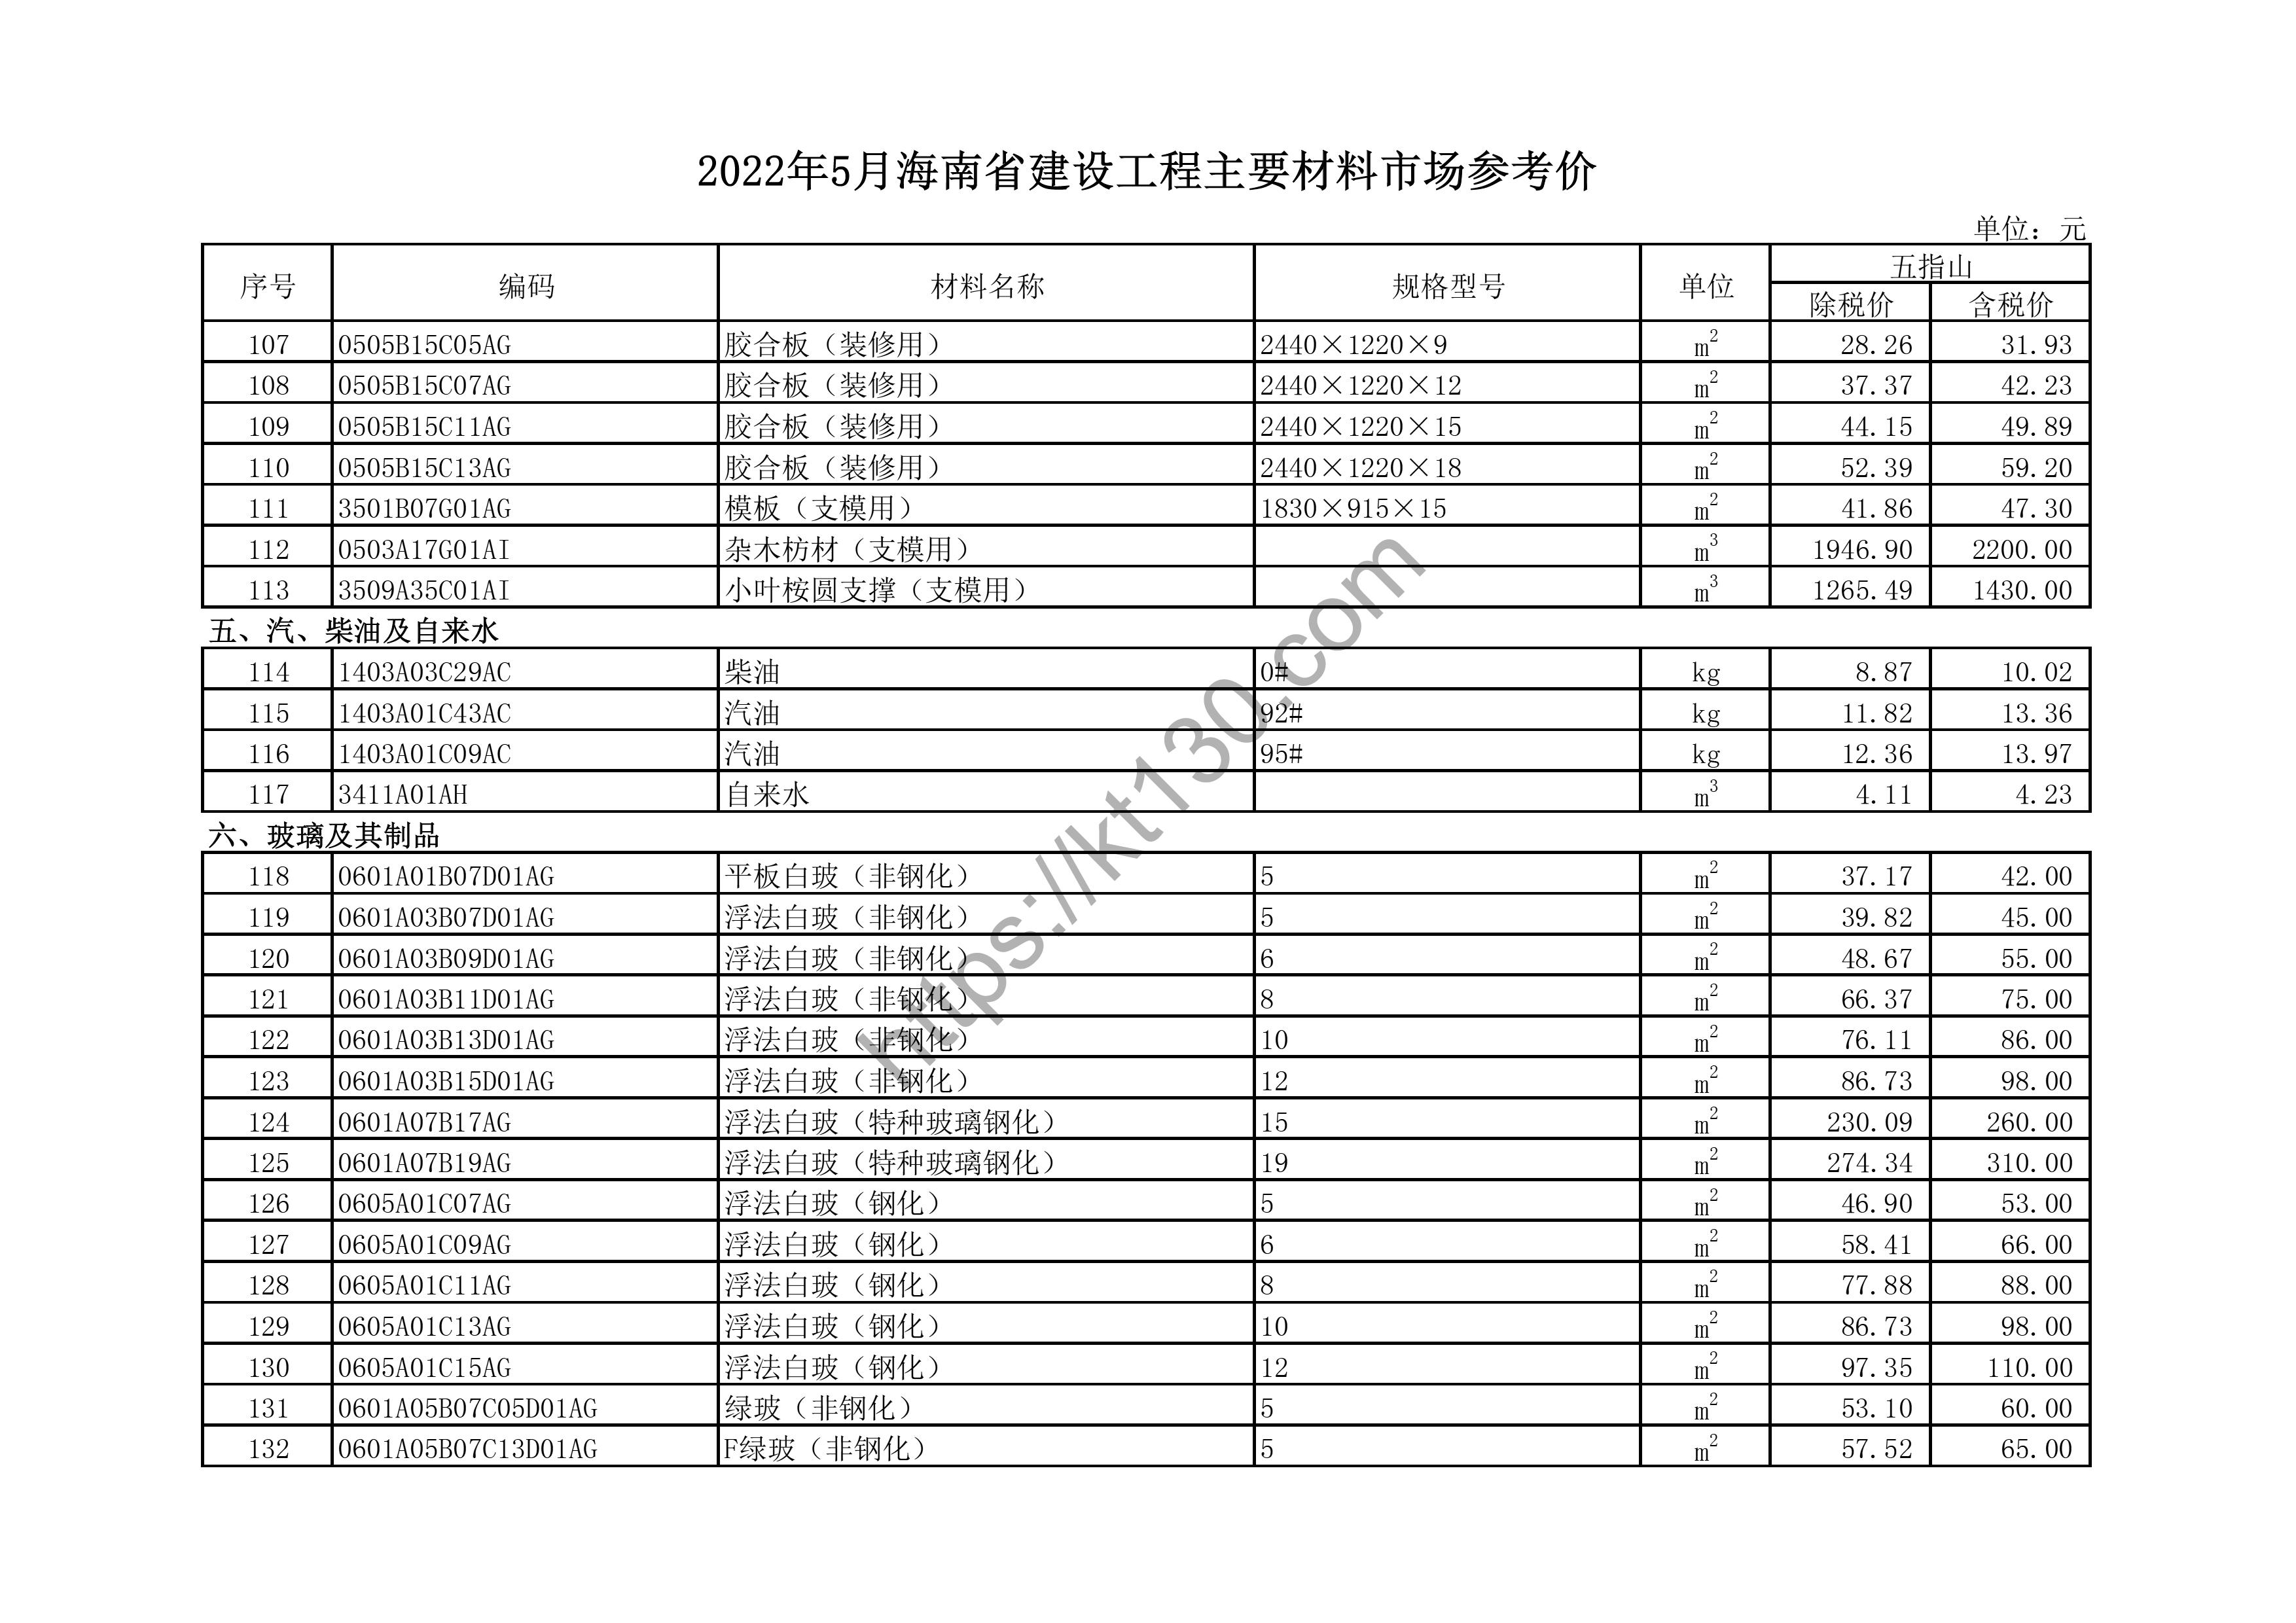 海南省2022年5月建筑材料价_干法夹胶玻璃_44381